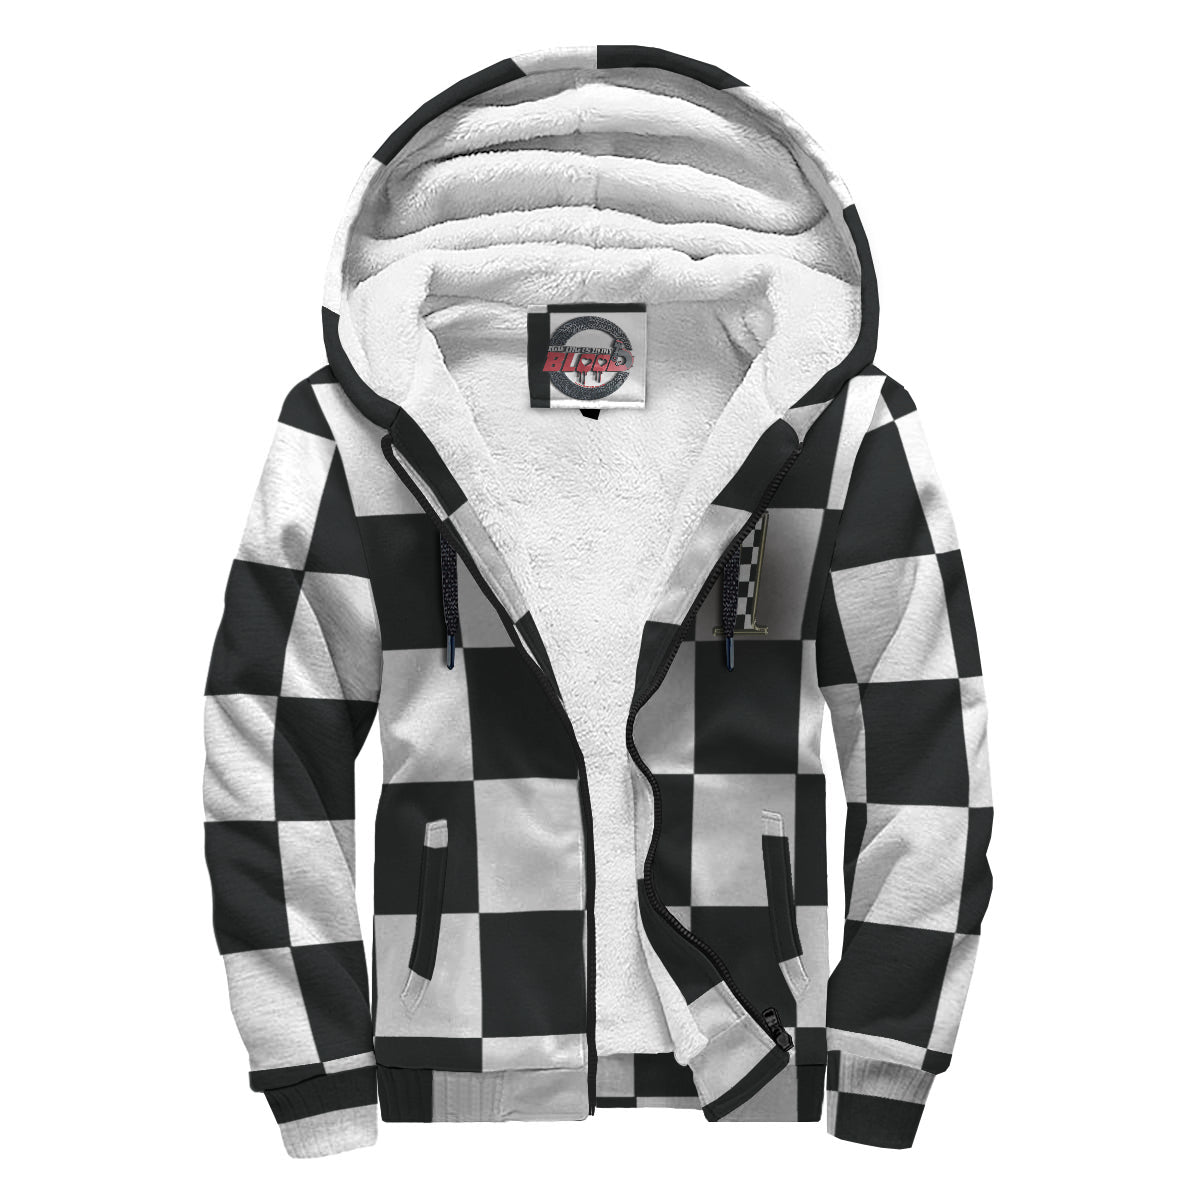 Custom racing checkered flag sherpa jacket N71